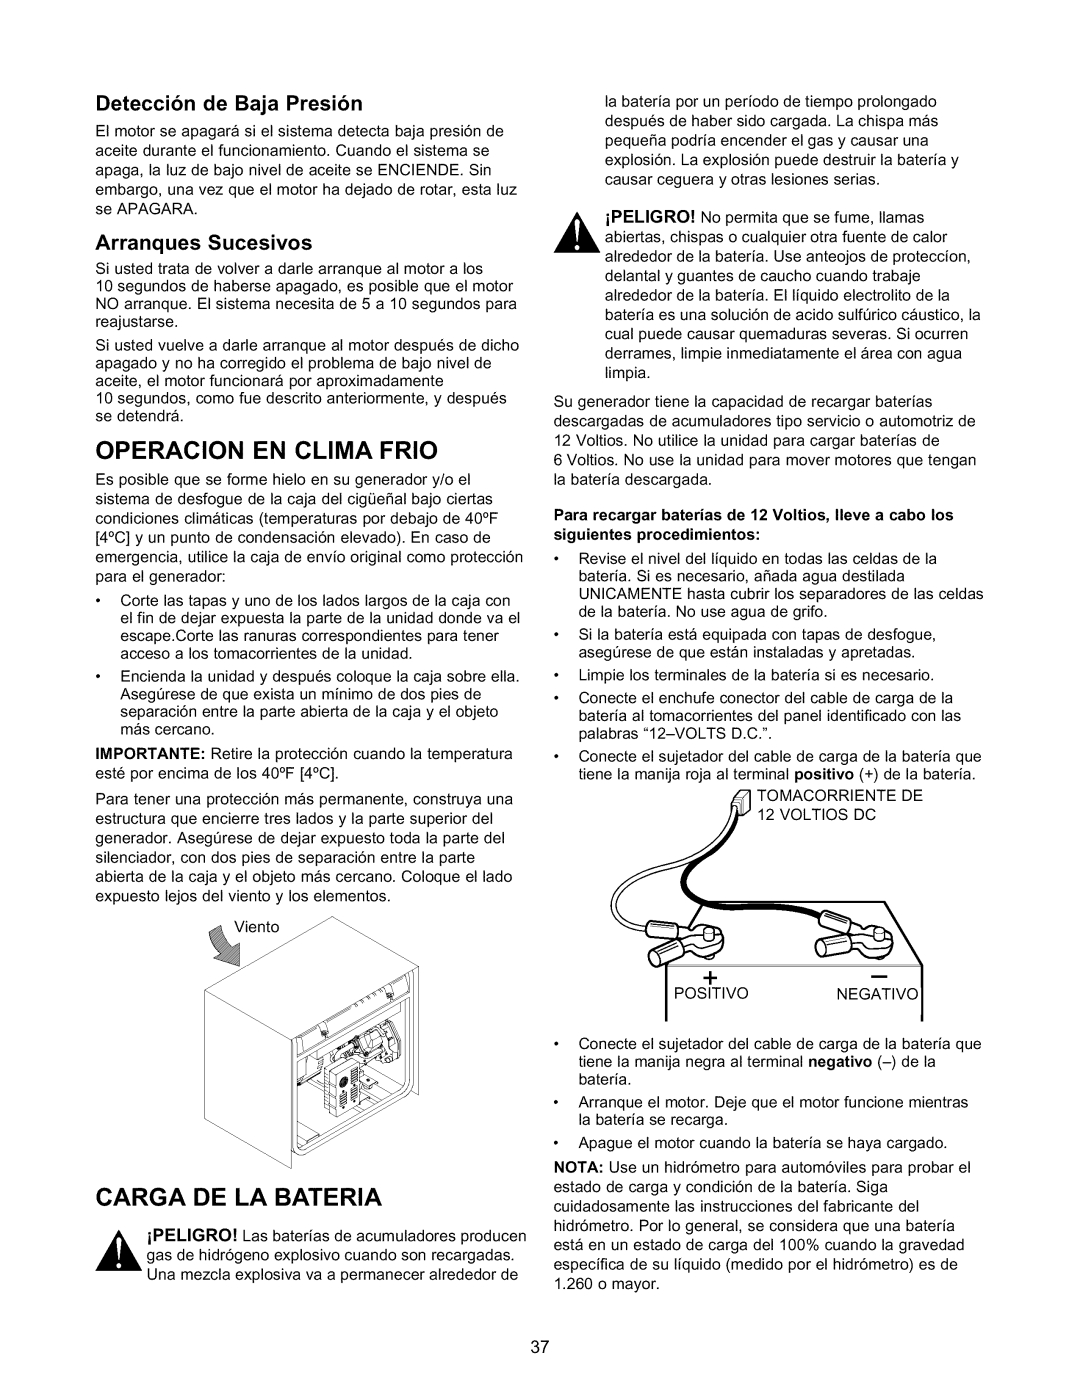 Craftsman 580.327141 Operacion En Clima Frio, Carga De La Bateria, Deteccion de Baja Presion, Arranques Sucesivos 